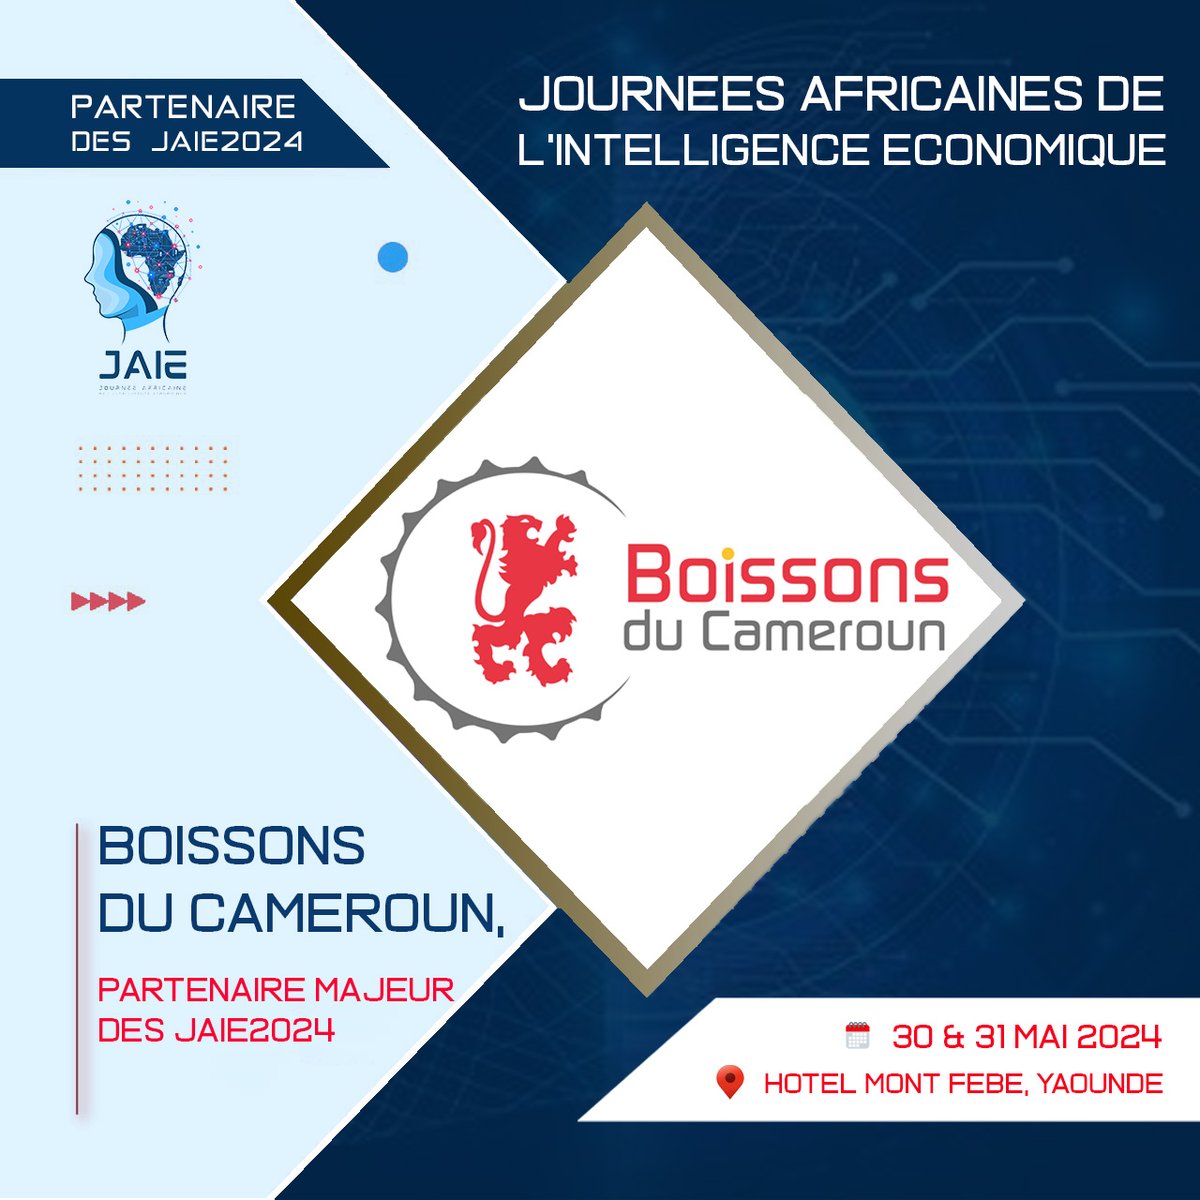 La 7ème édition des Journées africaines de l’intelligence économique #JAIE2024 du 30 au 31 mai 2024, à Yaoundé, se réjouit du partenariat de @BoissonsduCMR, Sponsor Premium pour sa bonne tenue. 

Plus d'informations : les-jaie.info

#IntelligenceEconomique #Influence